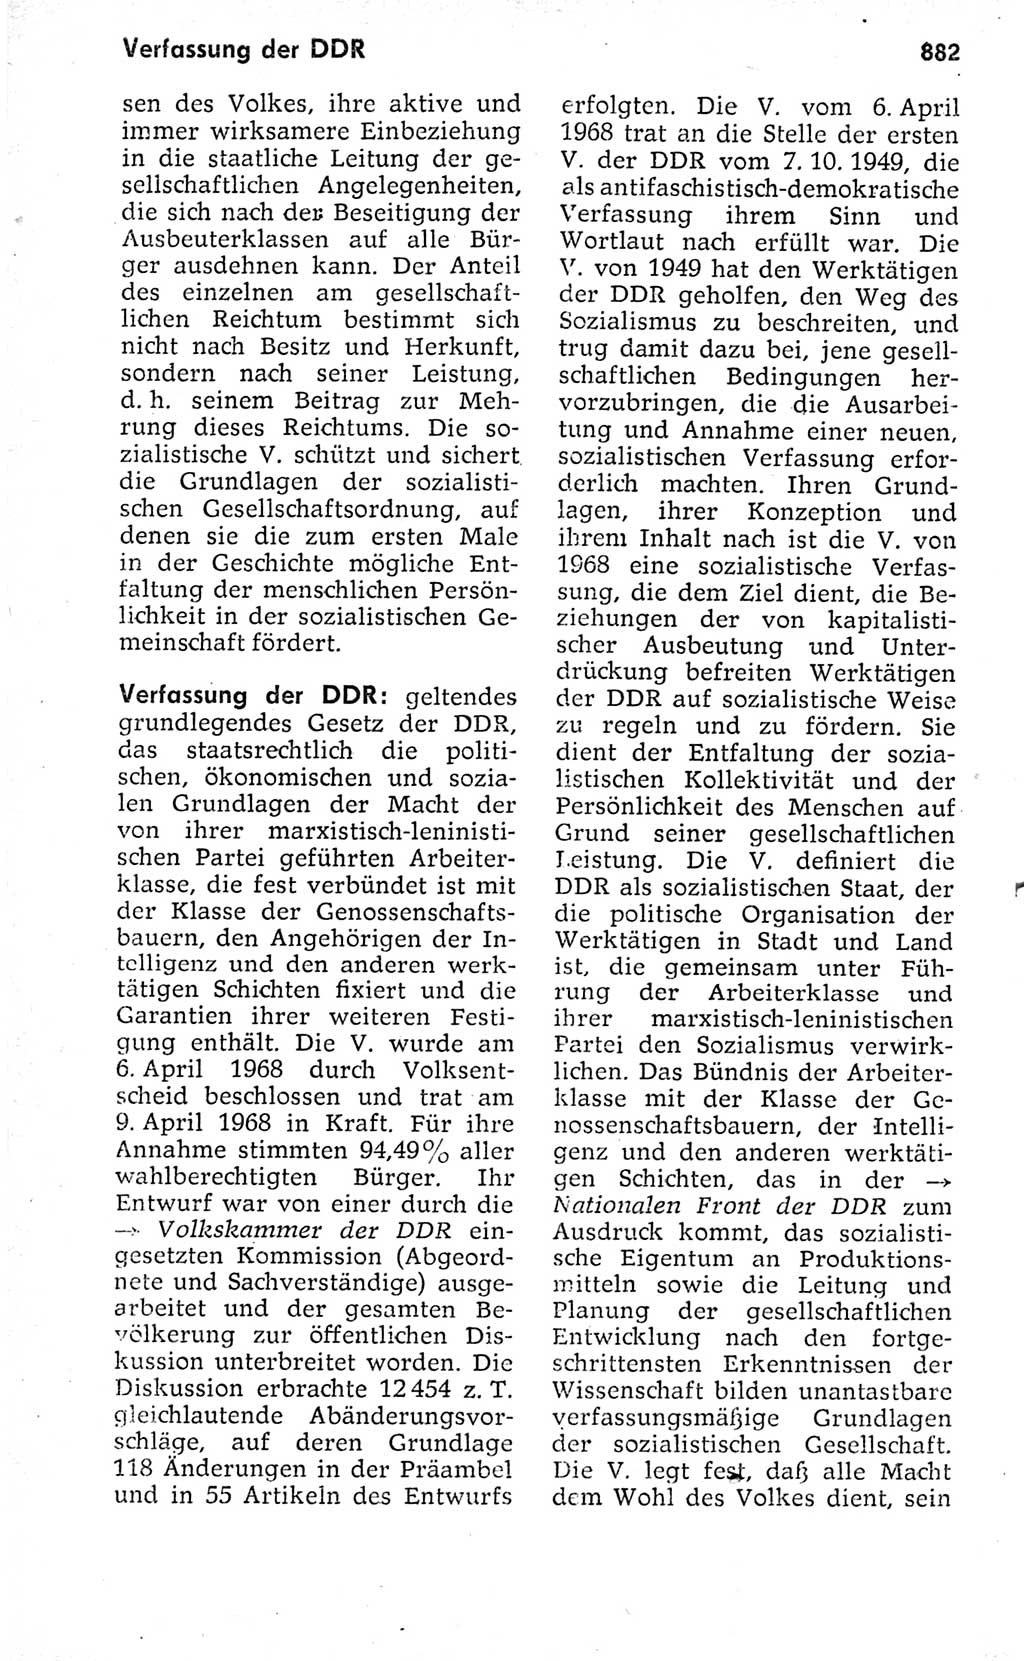 Kleines politisches Wörterbuch [Deutsche Demokratische Republik (DDR)] 1973, Seite 882 (Kl. pol. Wb. DDR 1973, S. 882)